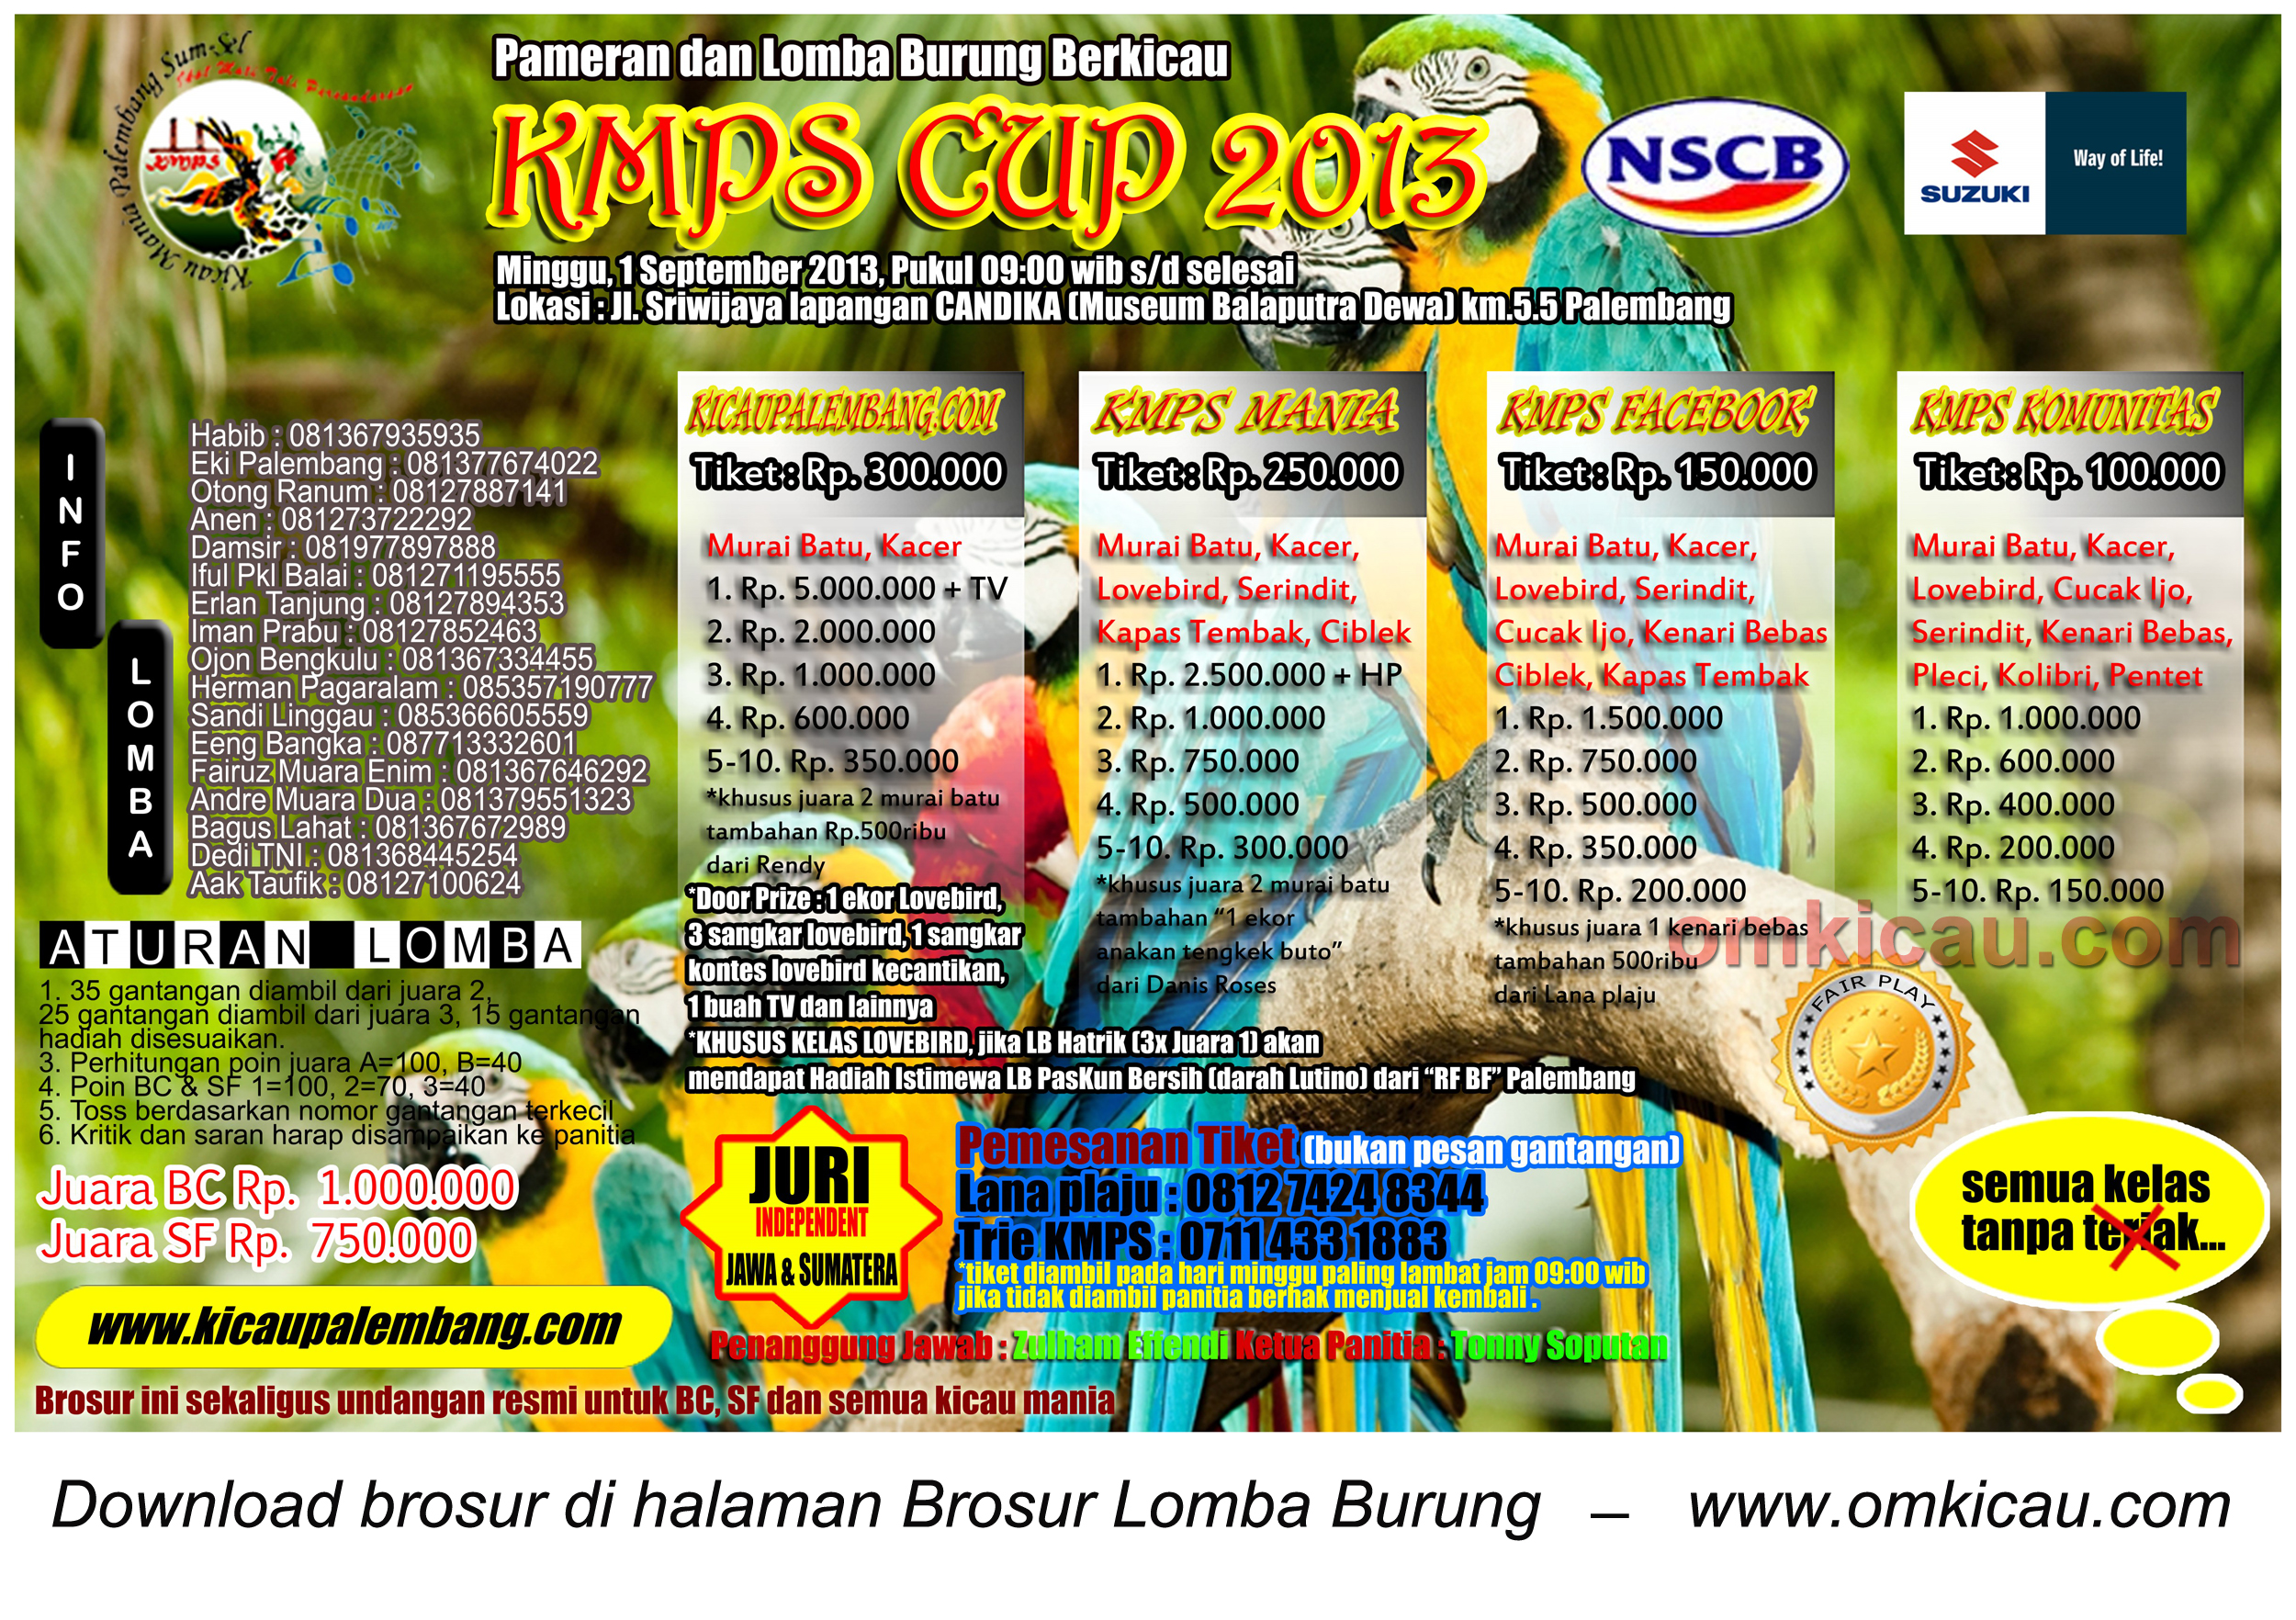 brosur kmps cup 2013